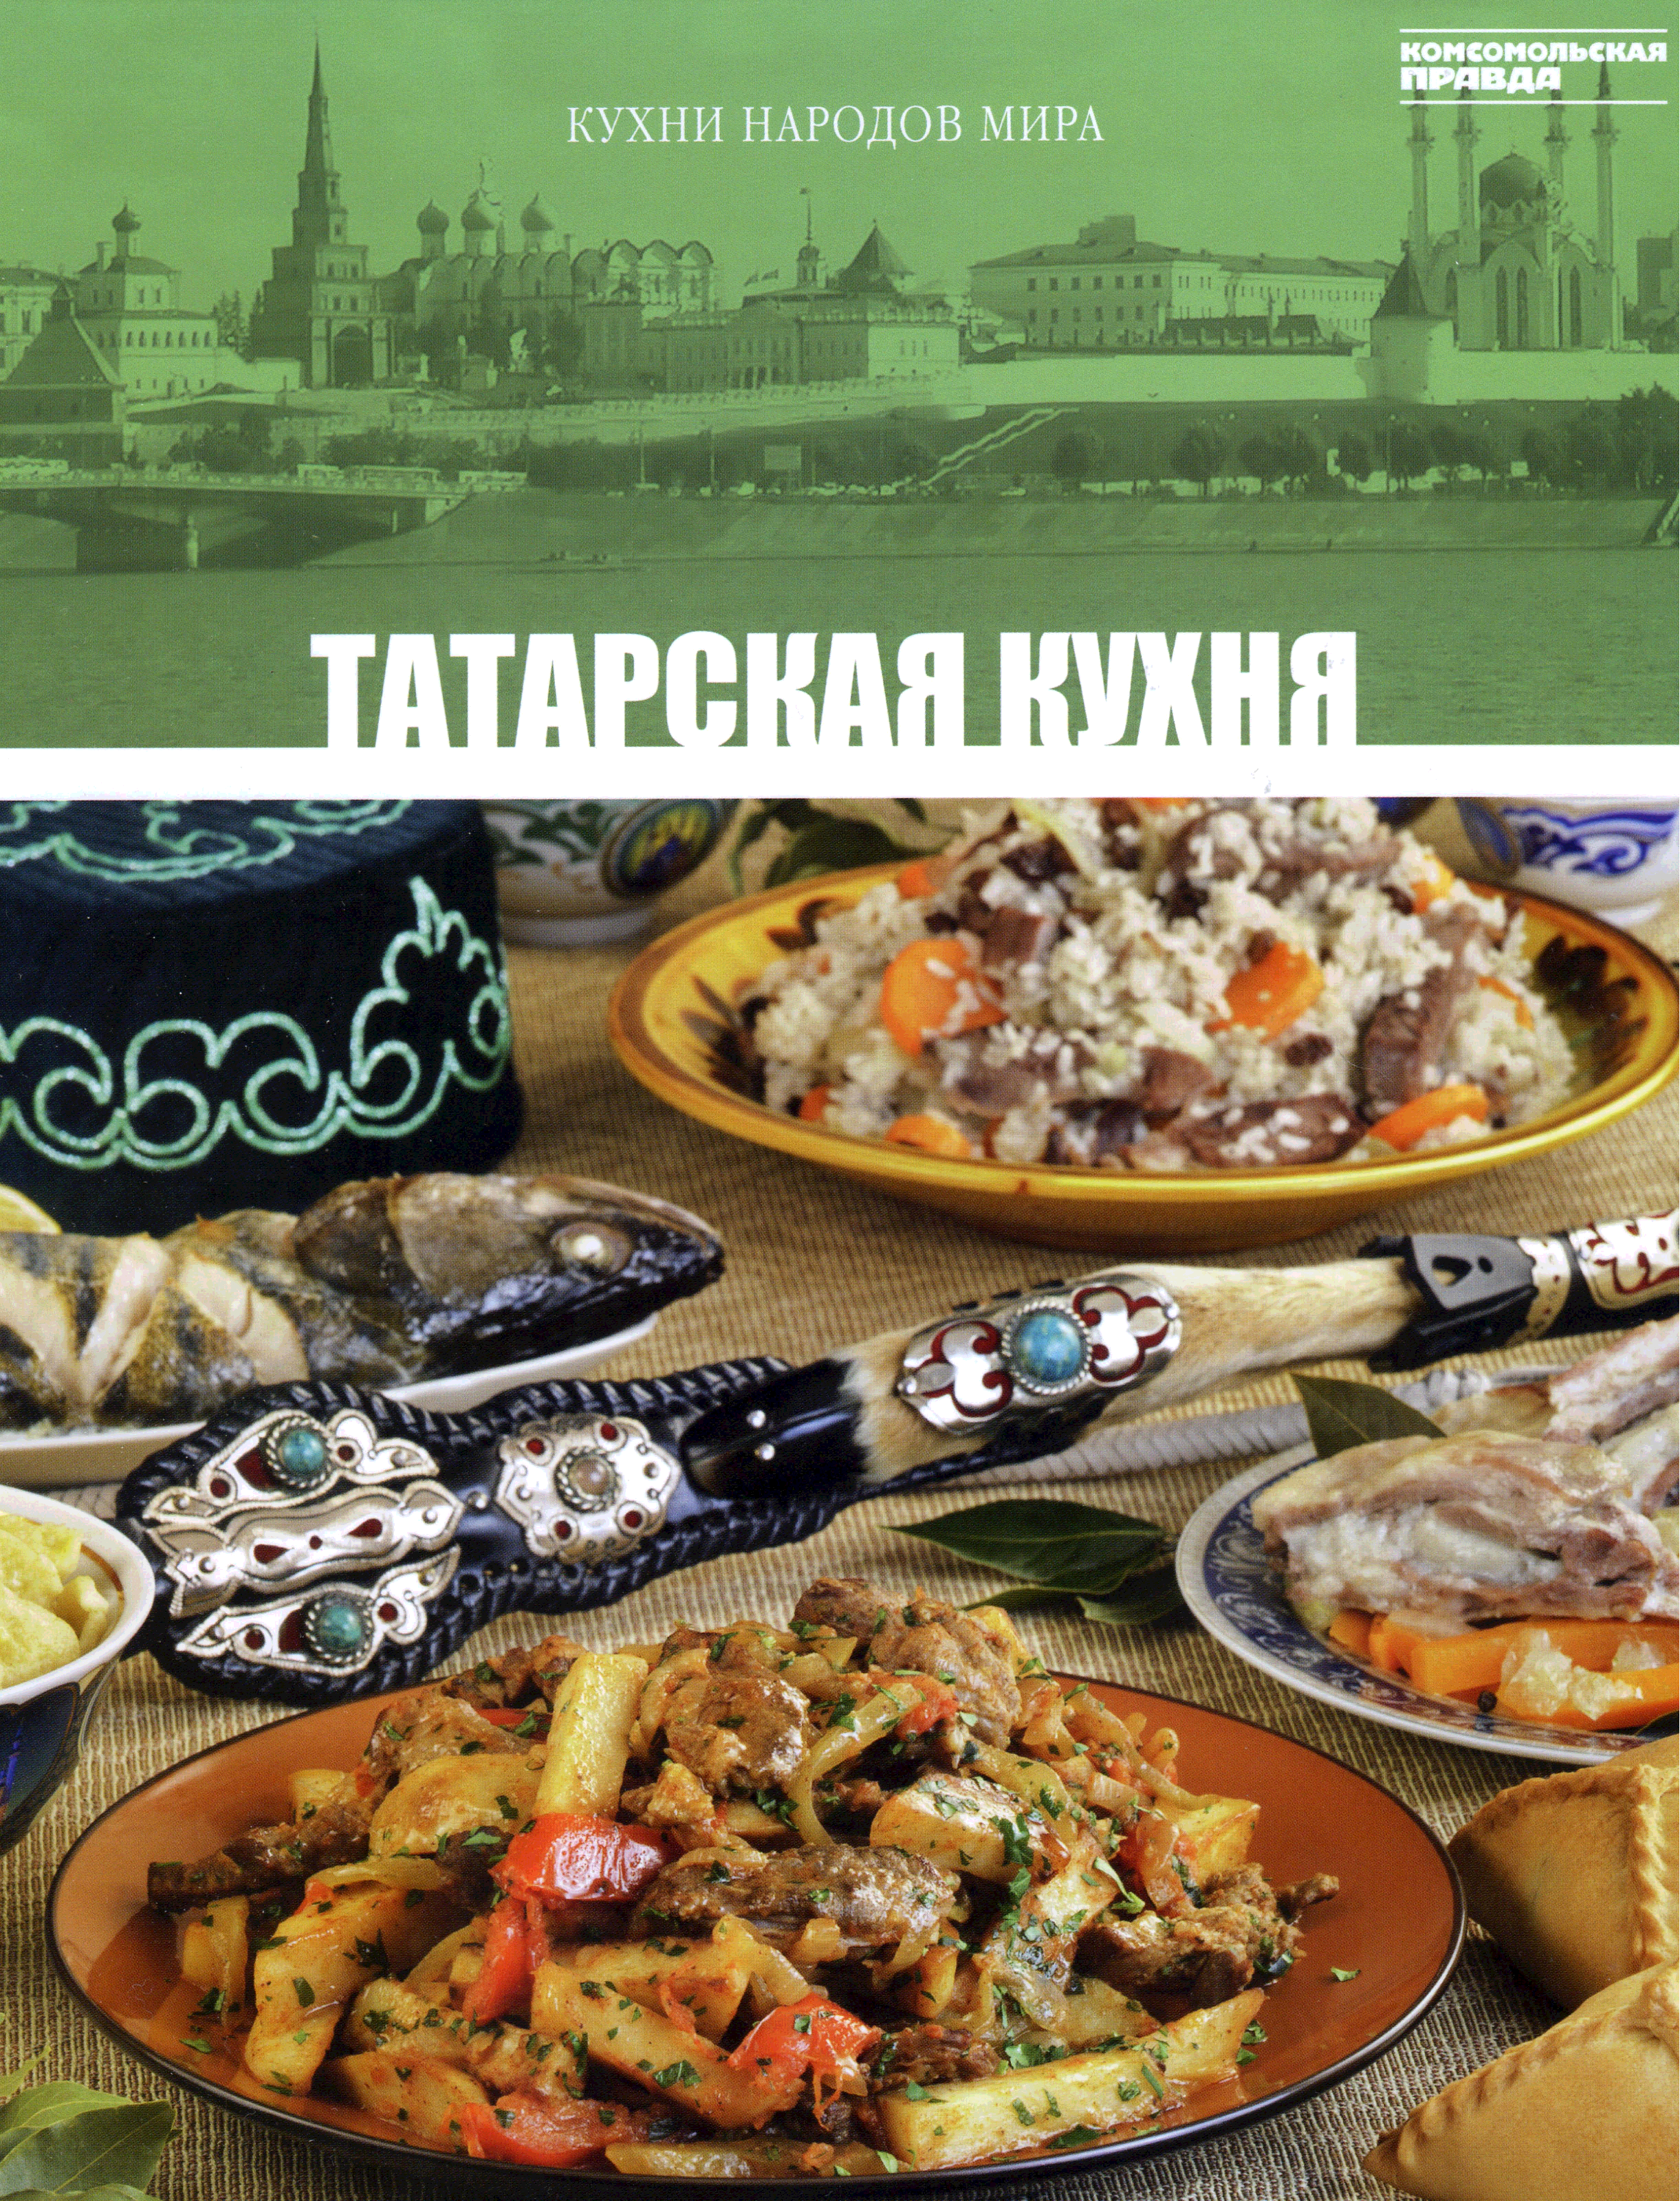 Блюда разных народов нашей страны. Татарская кухня. Татарская кухня книга.